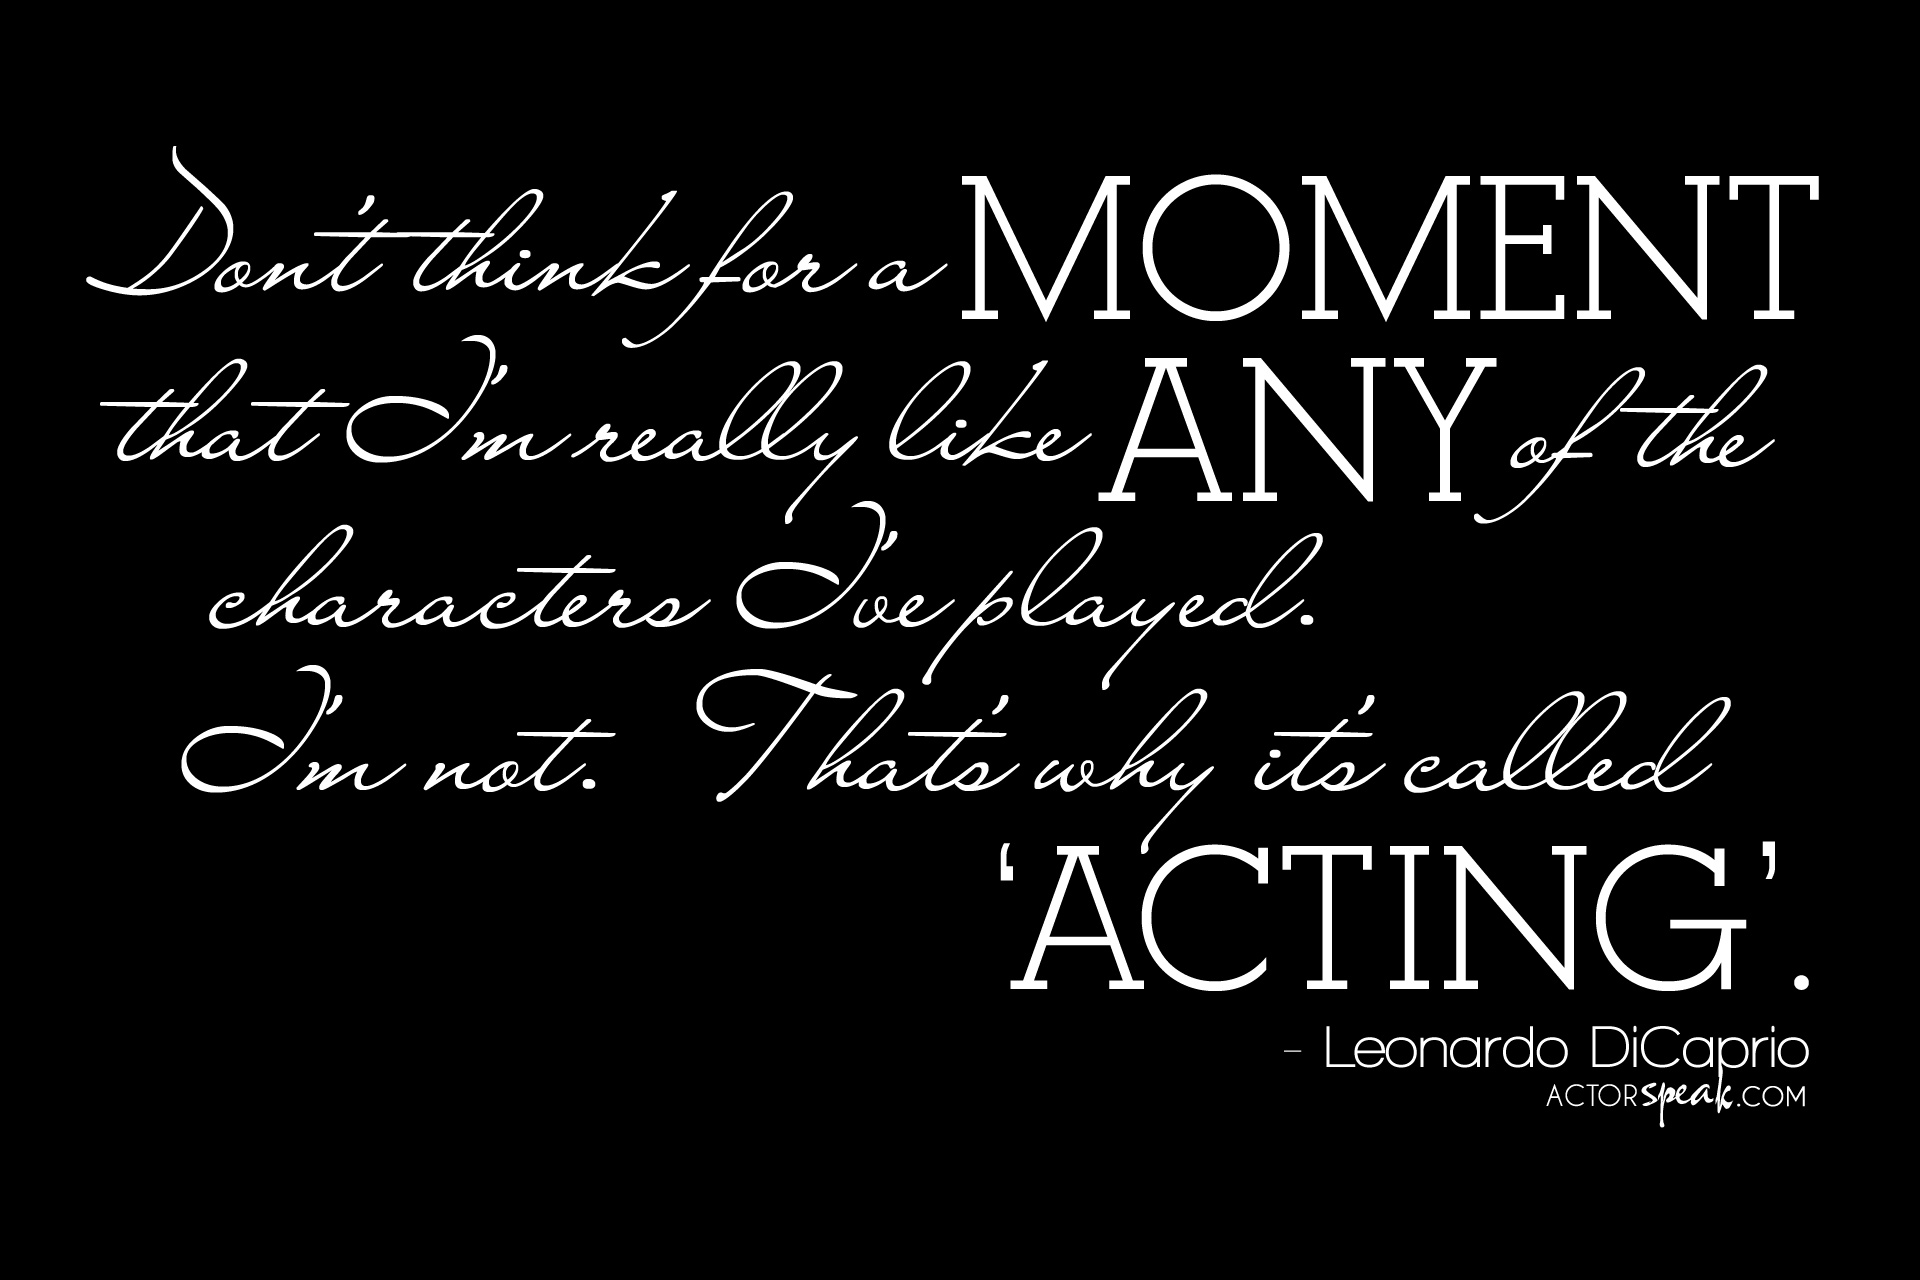 WALLPAPER Leonardo DiCaprio quote on acting ActorSpeak.com